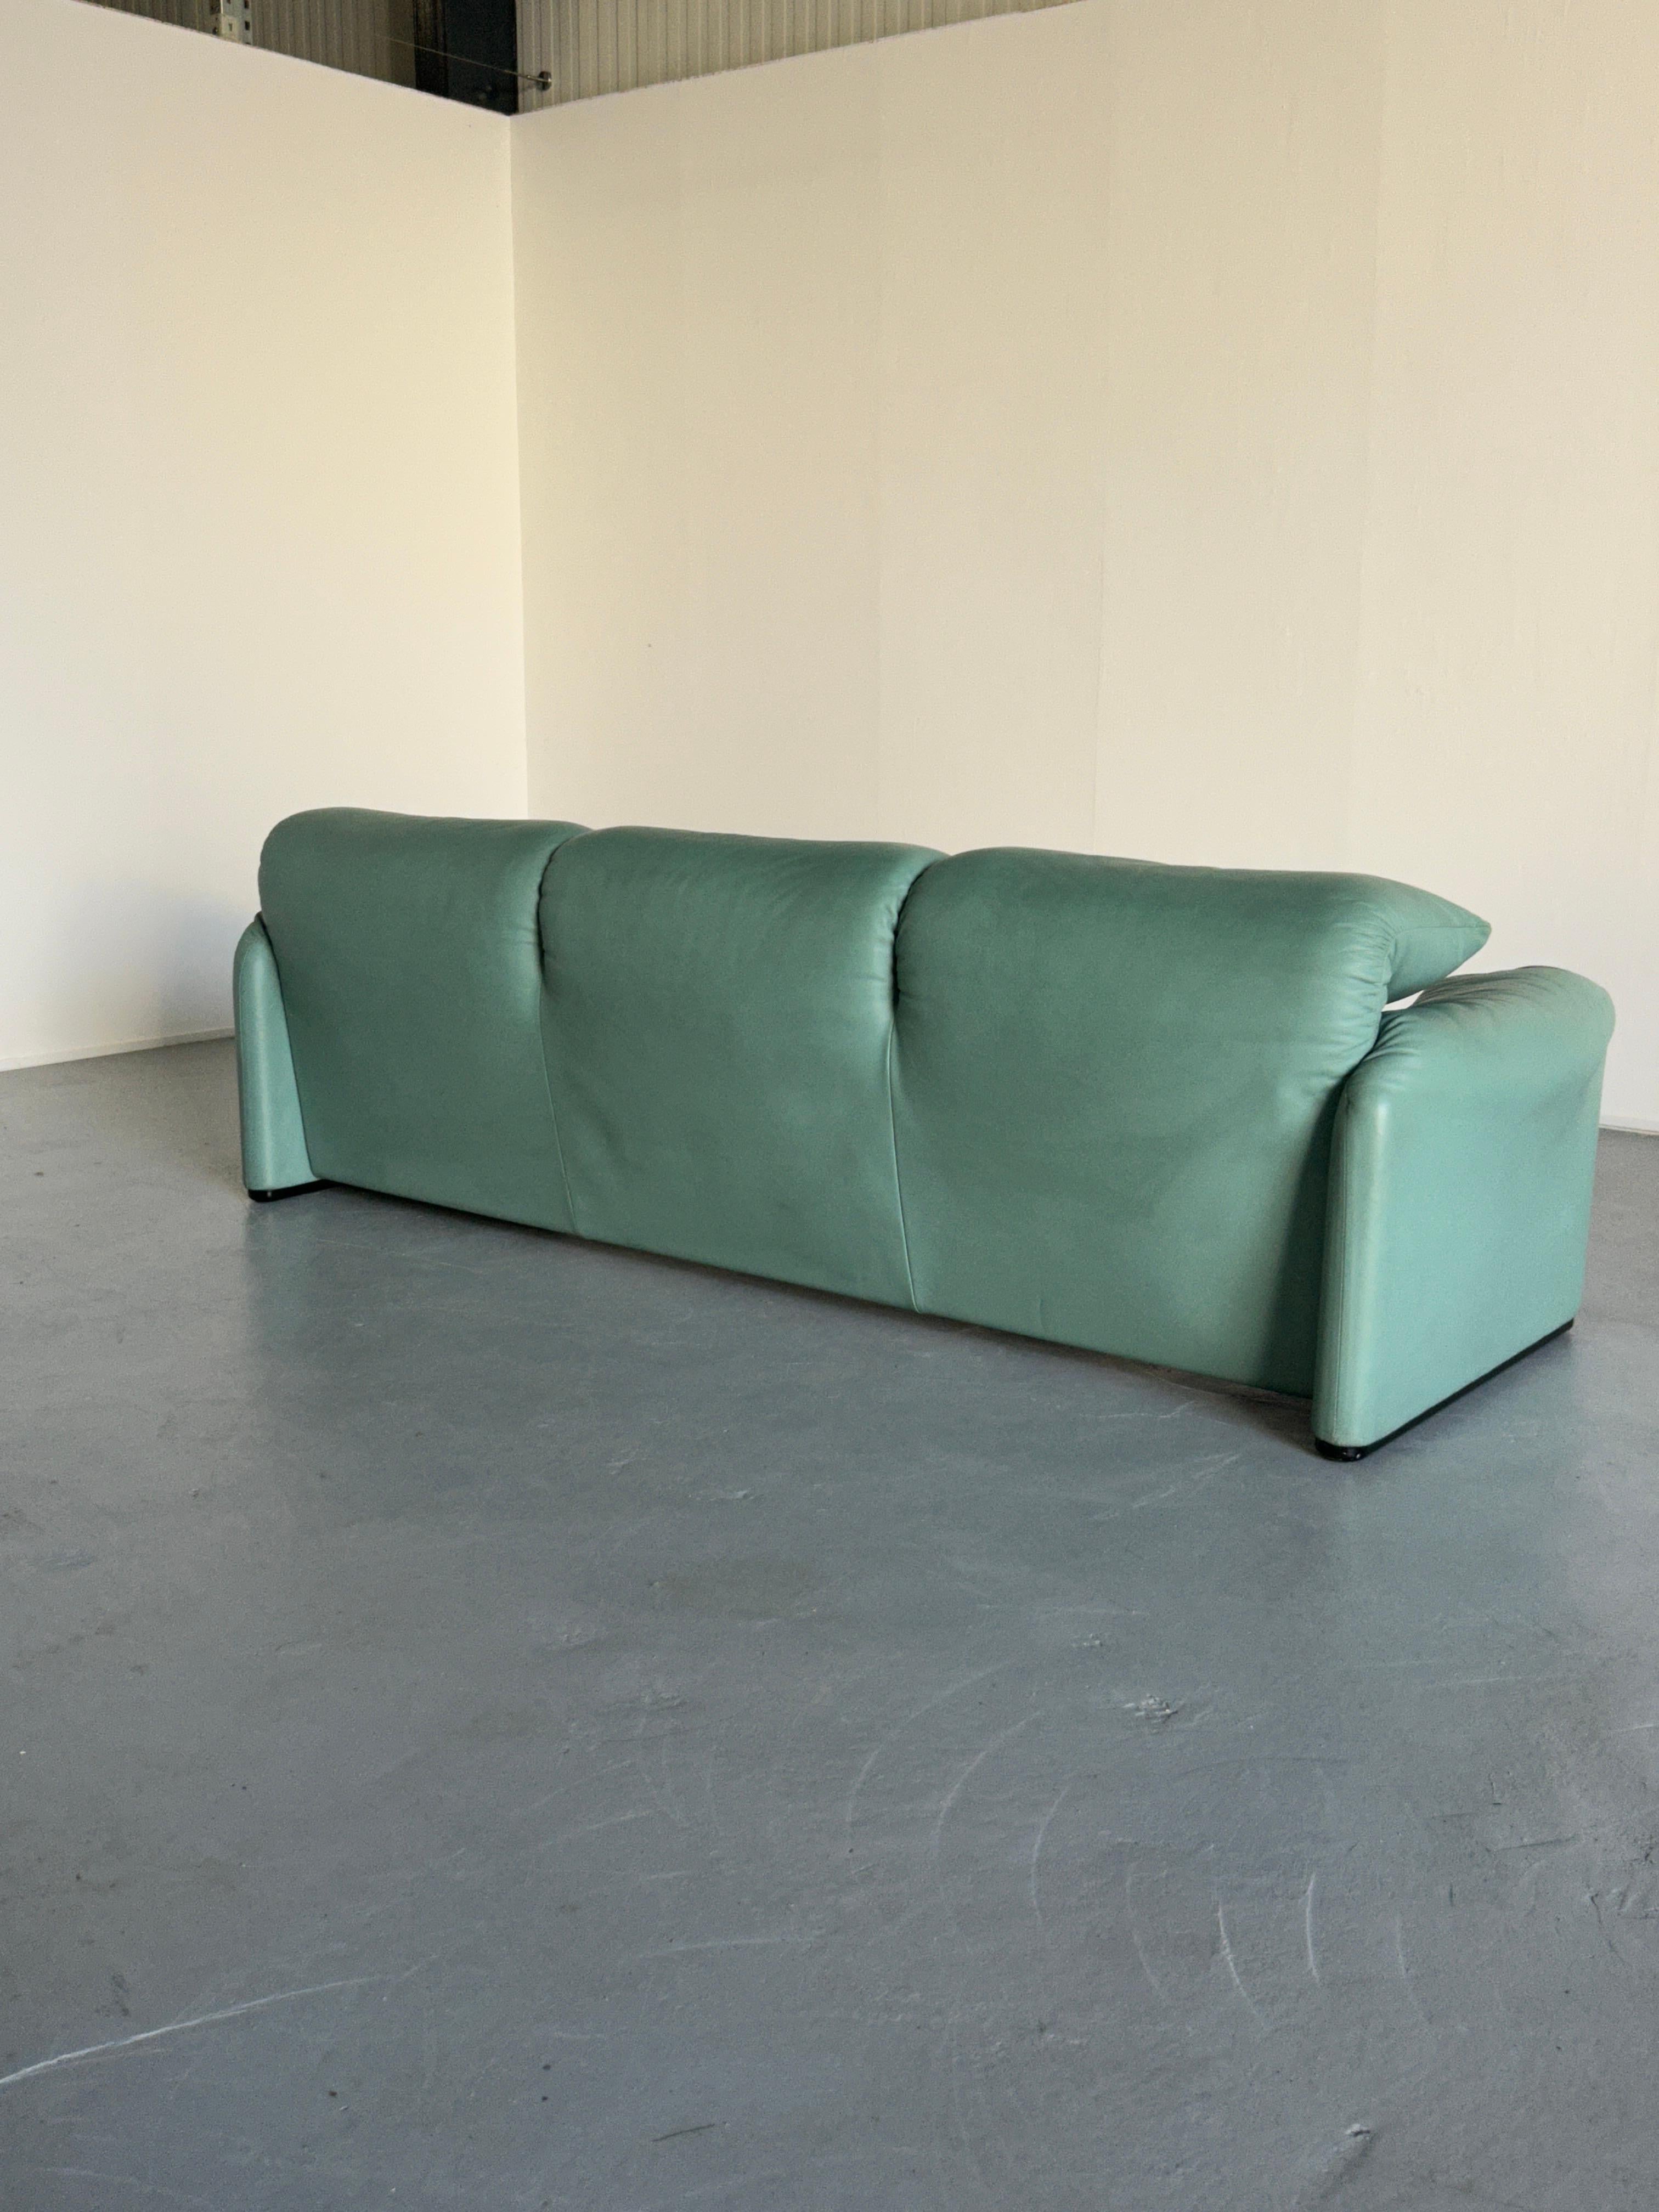  Vico Magistretti 'Maralunga' Mint Green Leather Sofa for Cassina, 1990s Italy 2